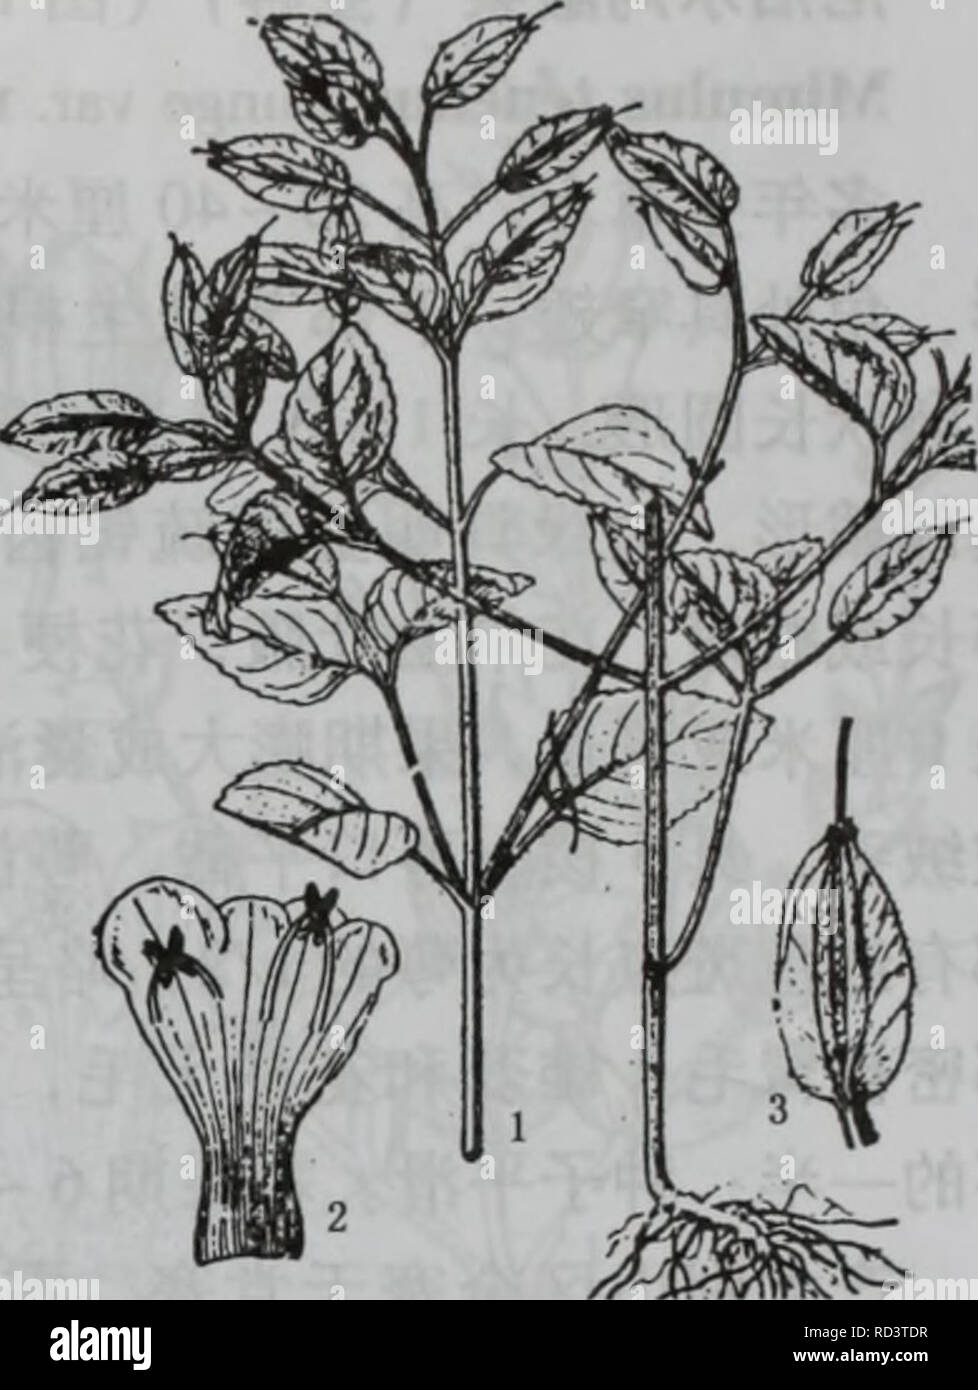 . da bie shan zhi wu zhi. botany. ä¸ä¸ããçåç§Scrophulariaceae 1009. å¾1436ç´«è²ç¿¼è¼ æ¤æ ªï¼2.è±å å±å¼ï¼ç¤ºéèï¼3.æ 1. ç´«è²ç¿¼è¼ï¼å¾1436) Torenia violacea ( Azaola) Pennell ä¸å¹´çèæ¬ï¼é«1040åç±³ãèç´ç«ï¼åæ¹å½¢ï¼åº é¨åææ«æ£ãå¶çåµå½¢æé¿åµå½¢ï¼é¿24åç±³ï¼å®½12 åç±³ï¼åä¸æ¸åå°ï¼è¾¹ç¼å ·ç¥å¸¦ç-å°çé¸é½¿ï¼ä¸¤é¢çè¢«æ æ¯ï¼å¶æé¿5  20æ¯«ç±³ãä¼å½¢è±åºé¡¶çåä¾§çï¼æ æ»è± æ¢ï¼æè±24æµï¼ä¾§ççéåä¸ºåæµï¼è±æ¢é¿1.53å ç±³ï¼è±è¼é¿åµå½¢ï¼å ·5ç¿ ï¼é¿1.31.7åç±³ï¼å®½68æ¯« ç±³ï¼ææé¿è¾¾2åç±³ï¼å®½1åç±³ï¼ç¿ å®½è¾¾2. 5æ¯«ç±³èç¥å¸¦ ç´«çº¢è²ï¼ç¿ ä¸ä¸å»¶ï¼é¡¶ç«¯è£æ5å°é½¿ï¼è±å é¿1.52.2 åç±³ï¼æ·¡é»è²æç½è²ï¼ä¸åå¤å°ç´ç«ï¼è¿åå½¢ Stock Photo